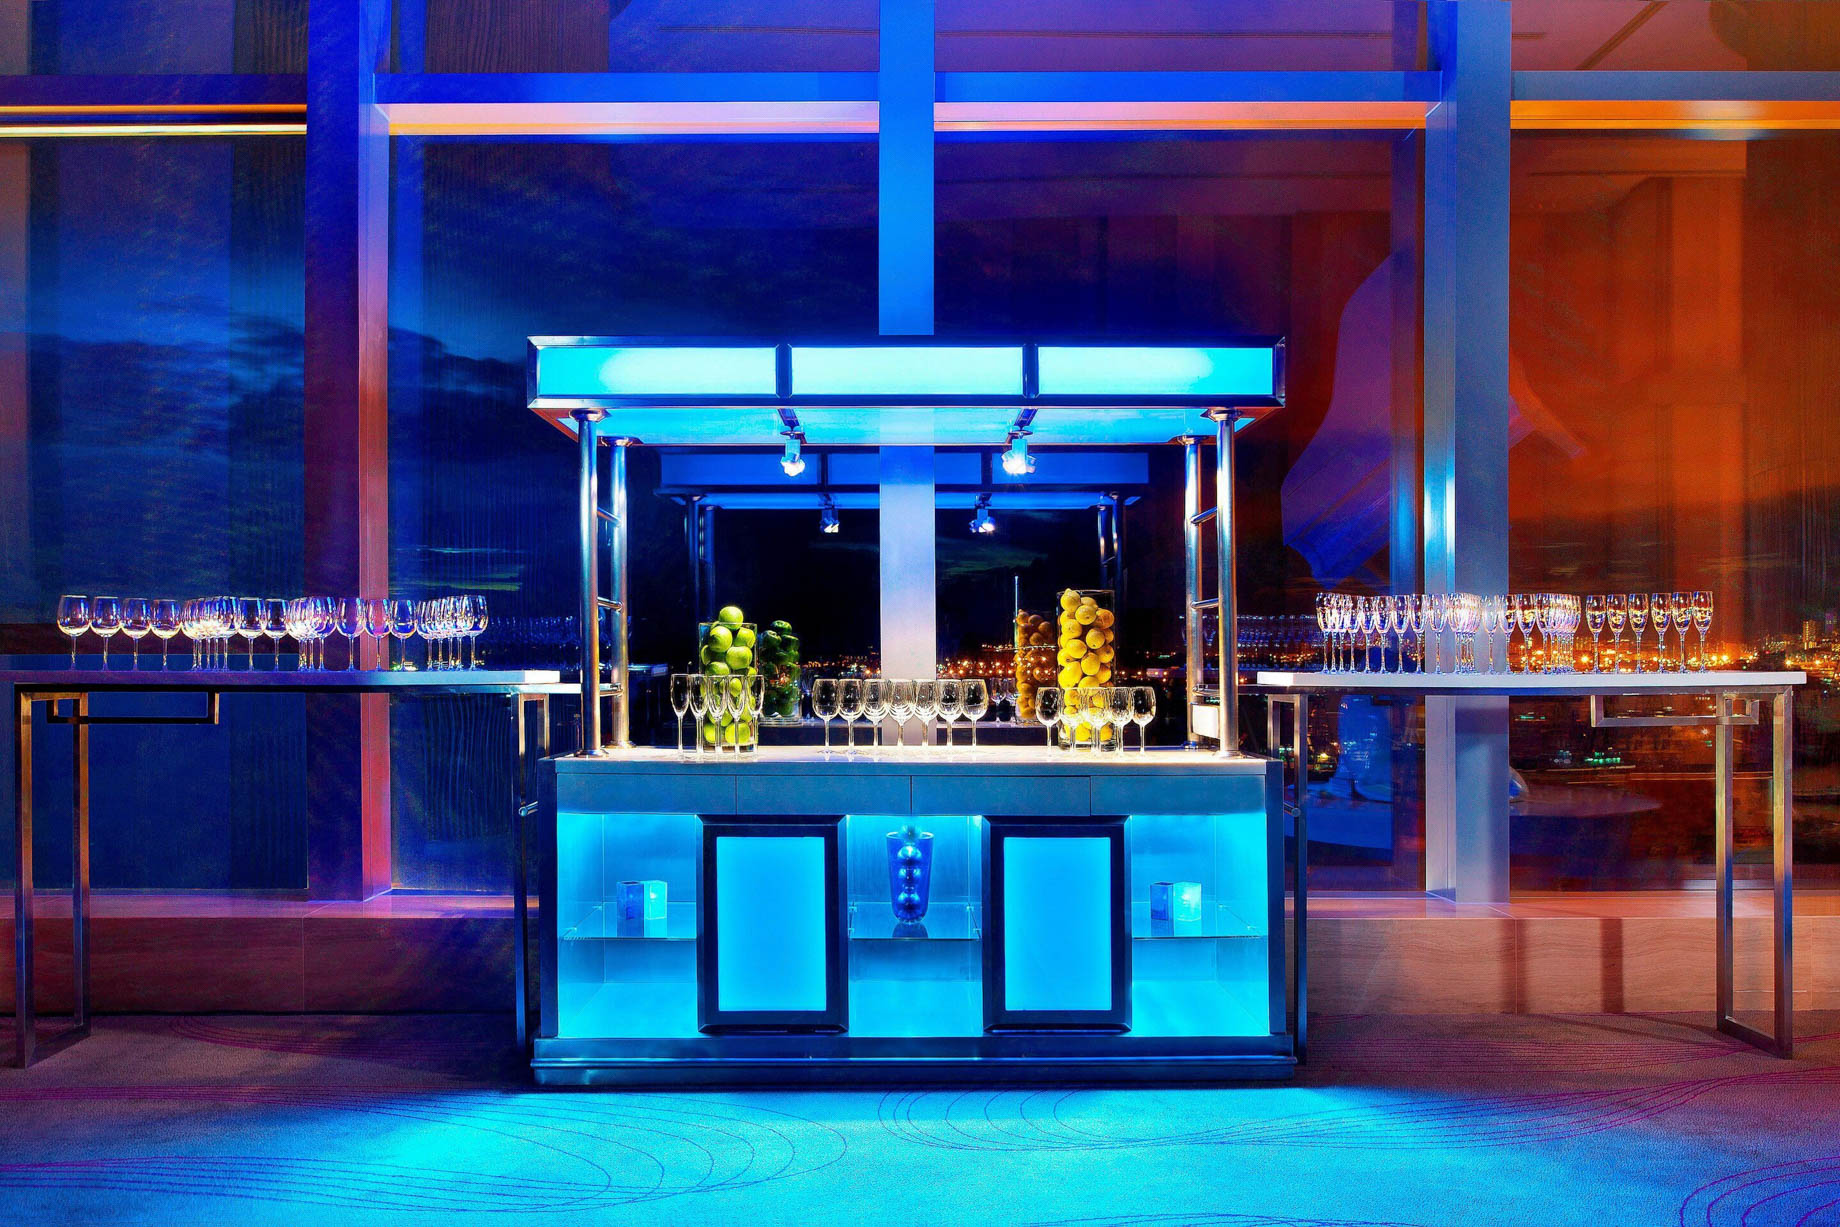 W Hong Kong Hotel – Hong Kong – Pre Function Bar Station